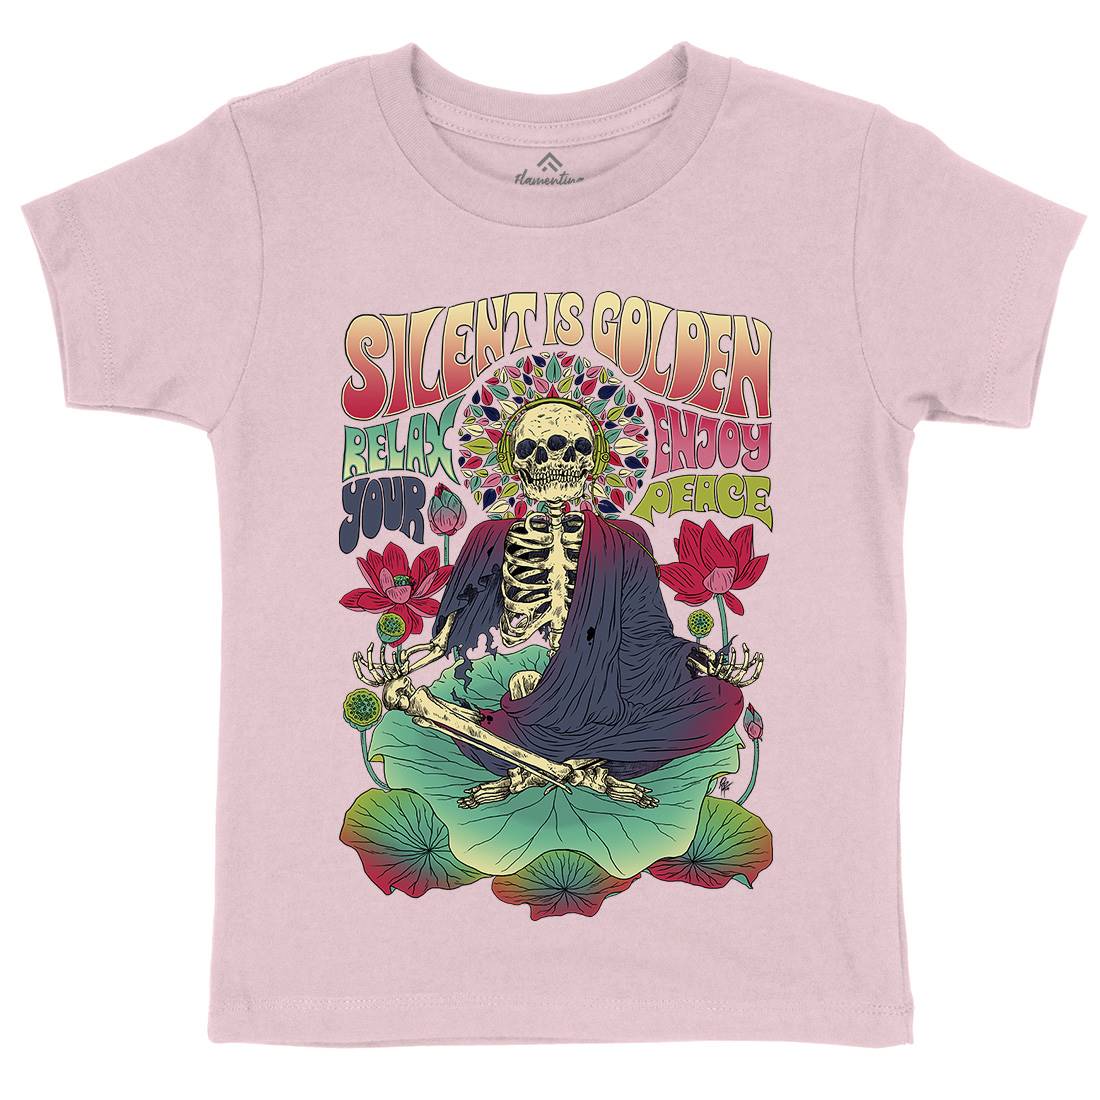 Silent Is Golden Kids Organic Crew Neck T-Shirt Peace D080